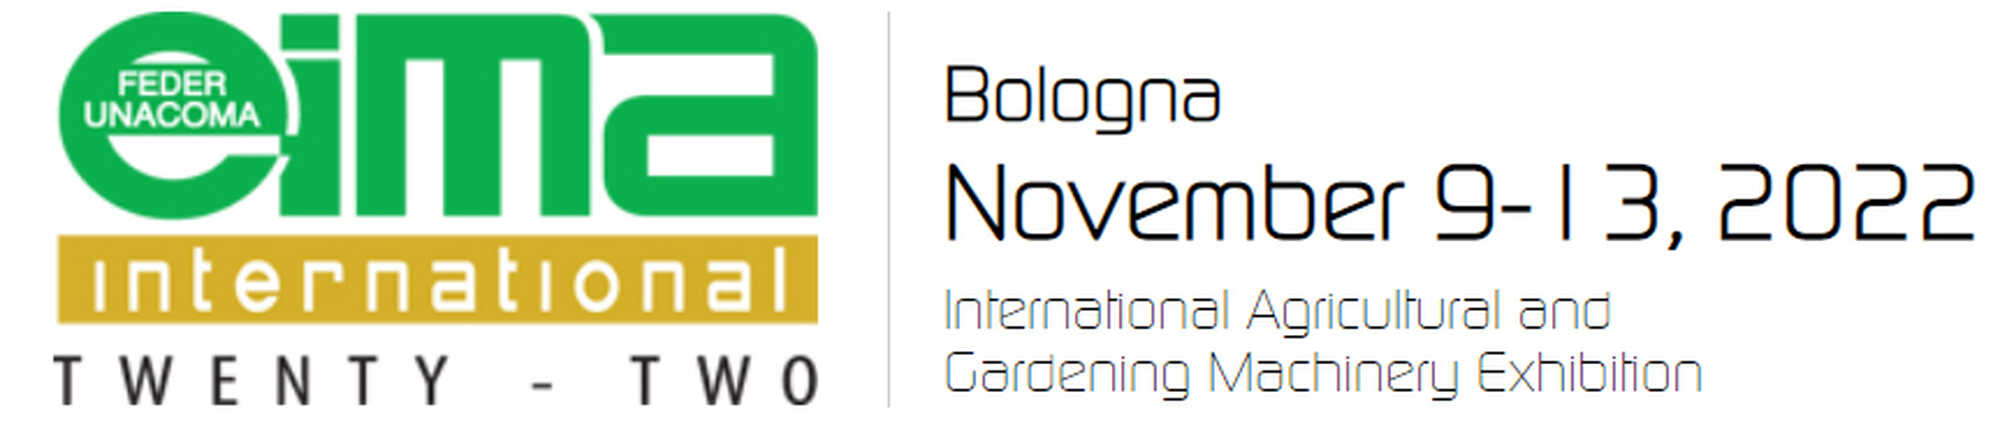 Болонья, 9 - 13 ноября 2022 г.